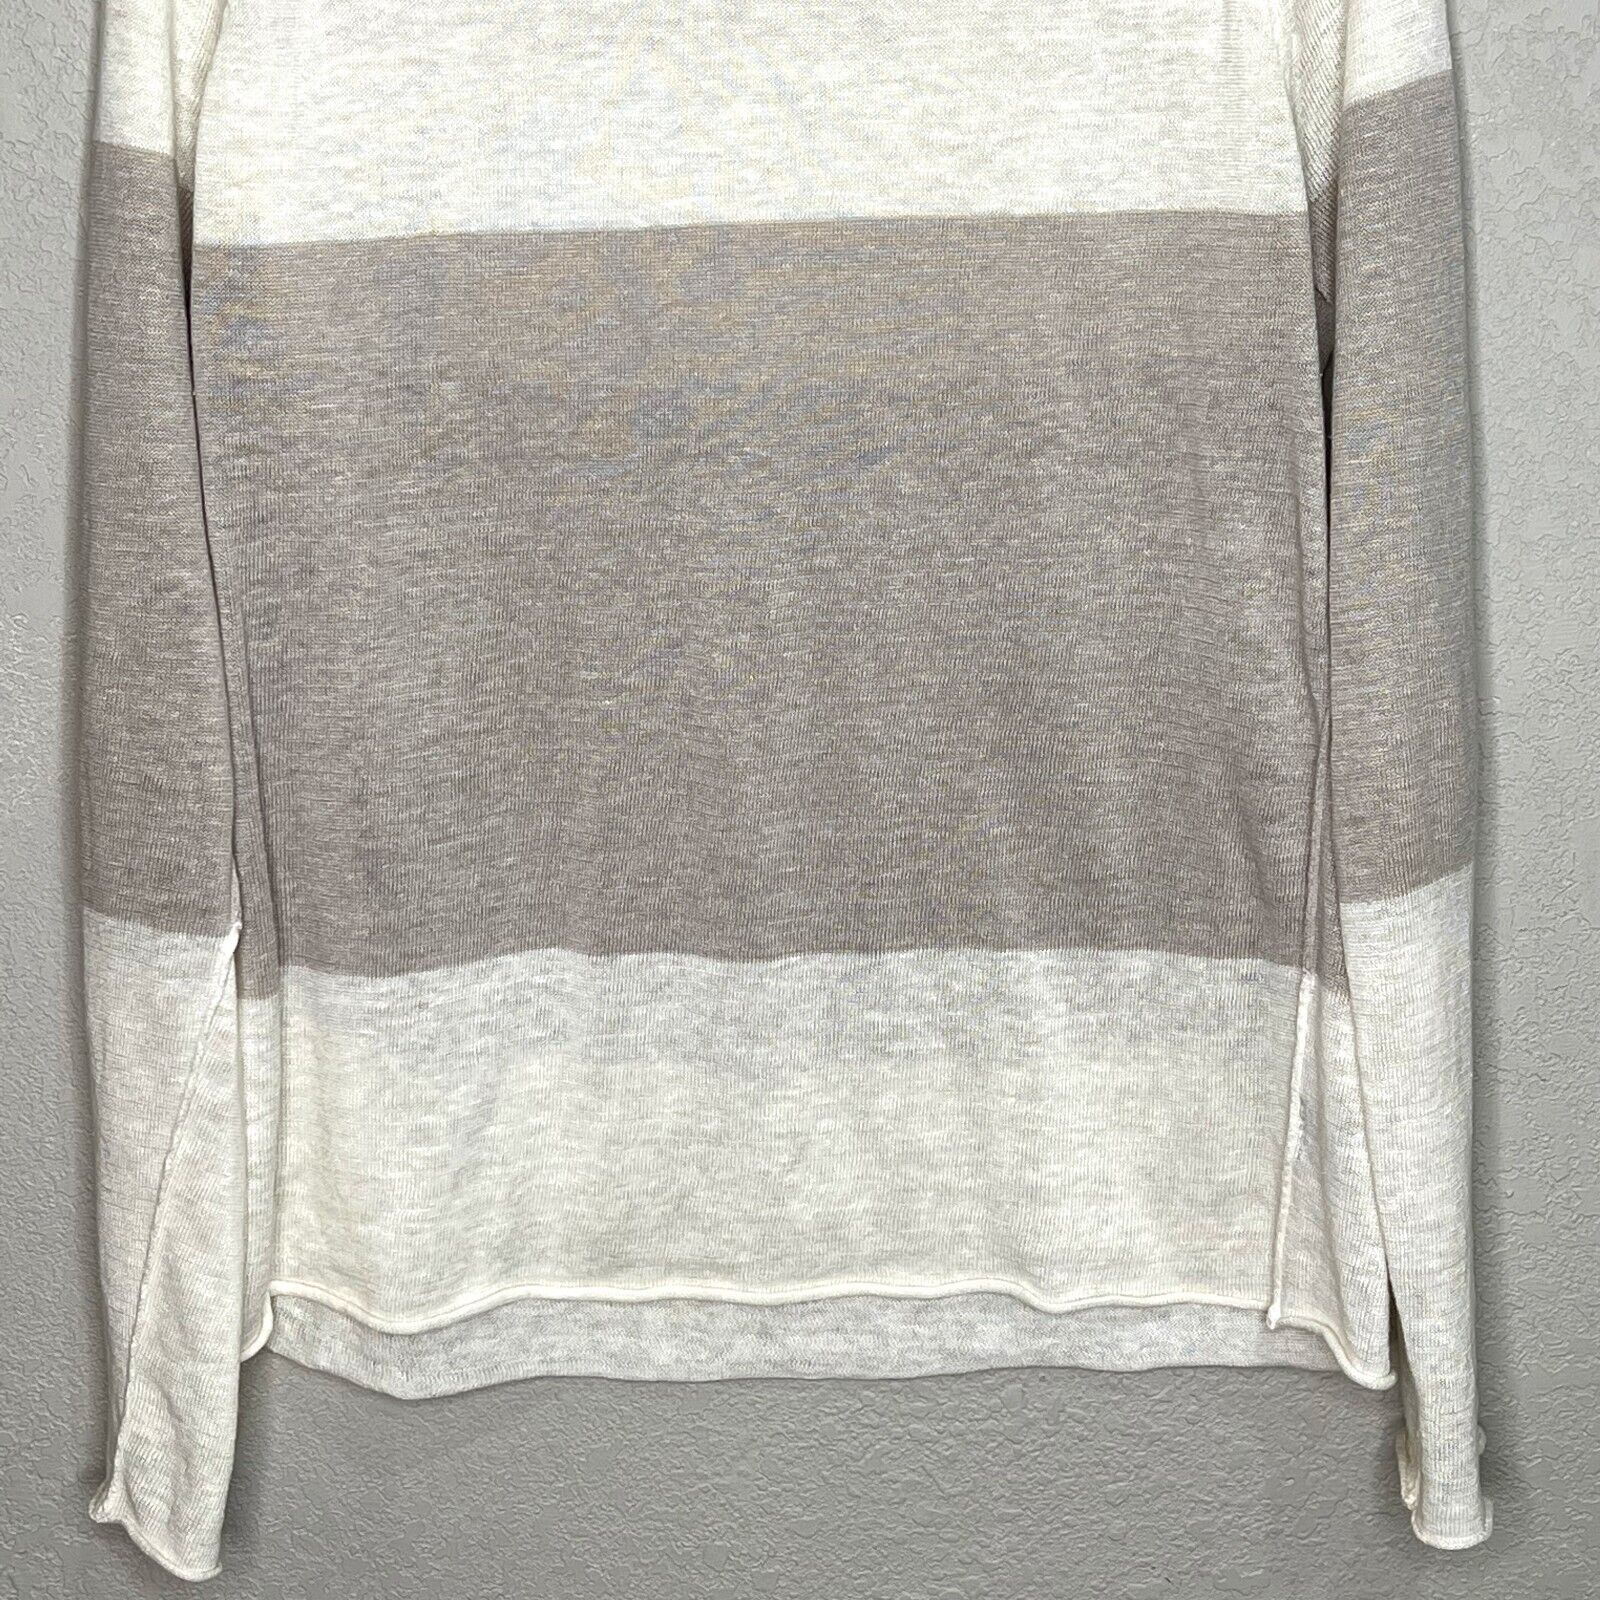 360 Sweater Colorblock Linen Sweater Medium